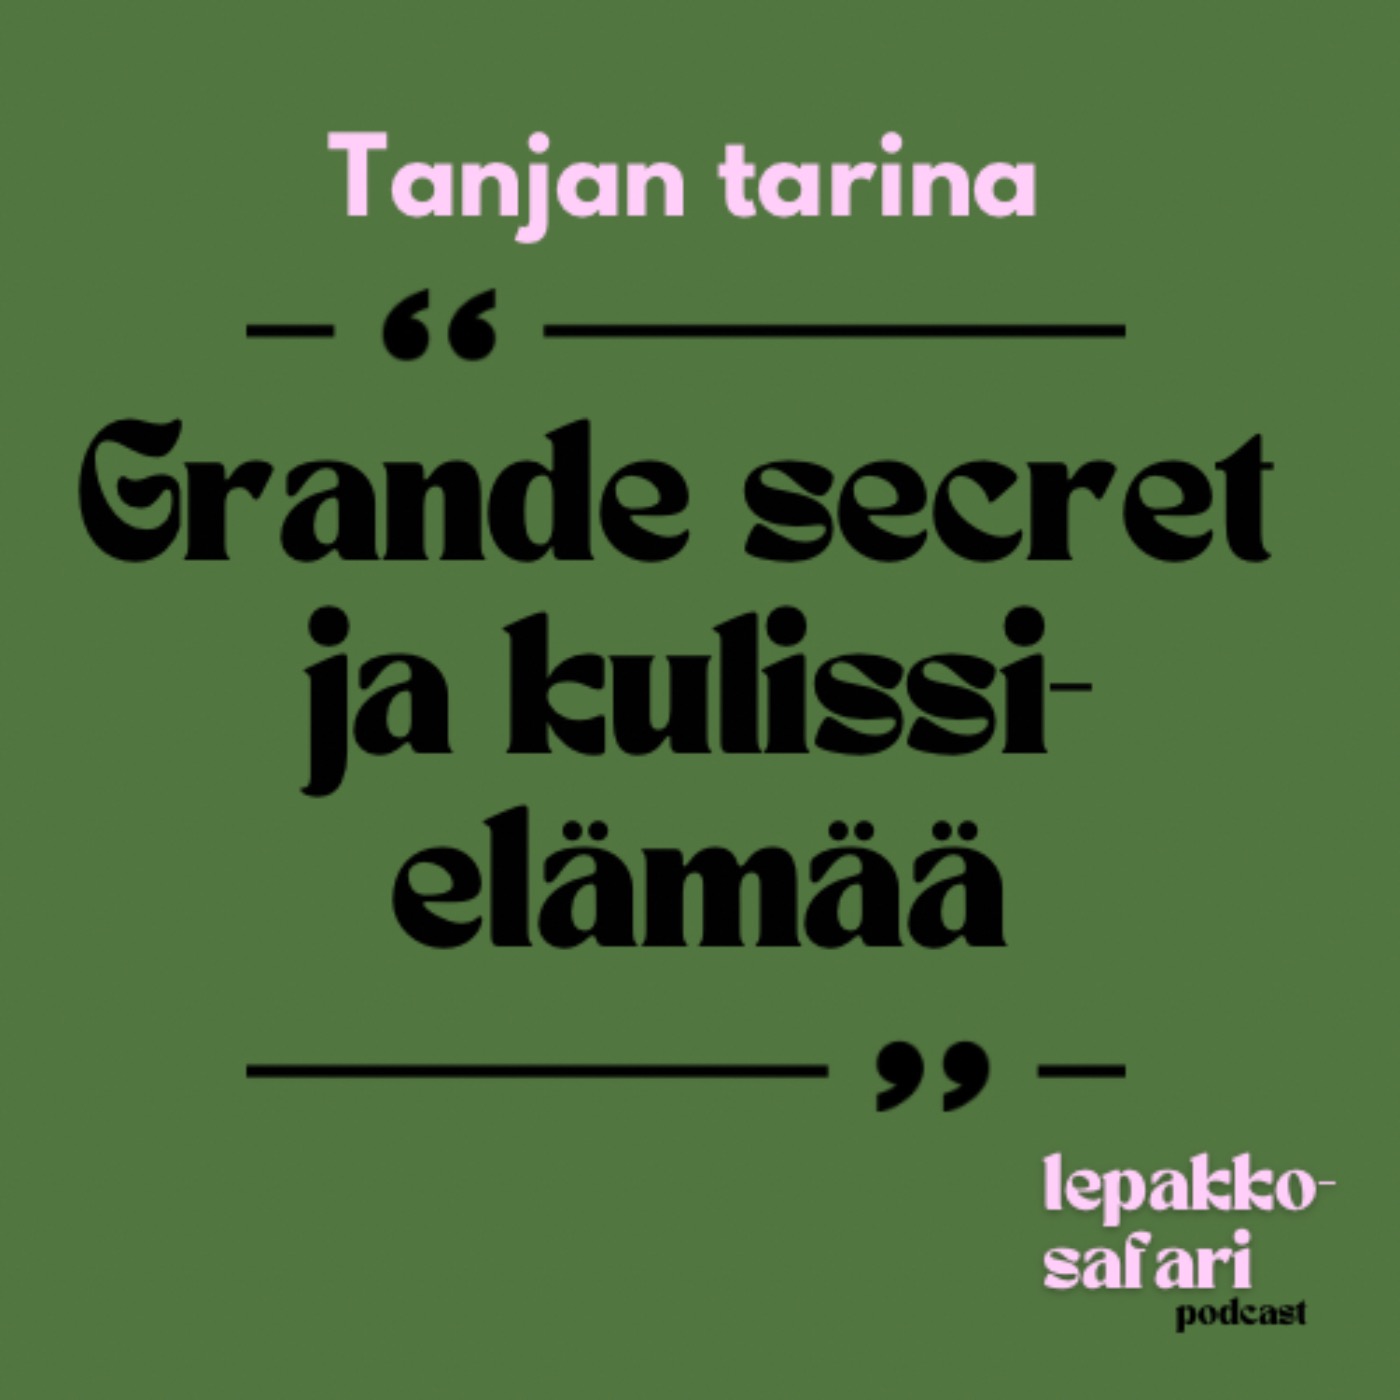 Tanjan tarina - Grande secret ja kulissielämää